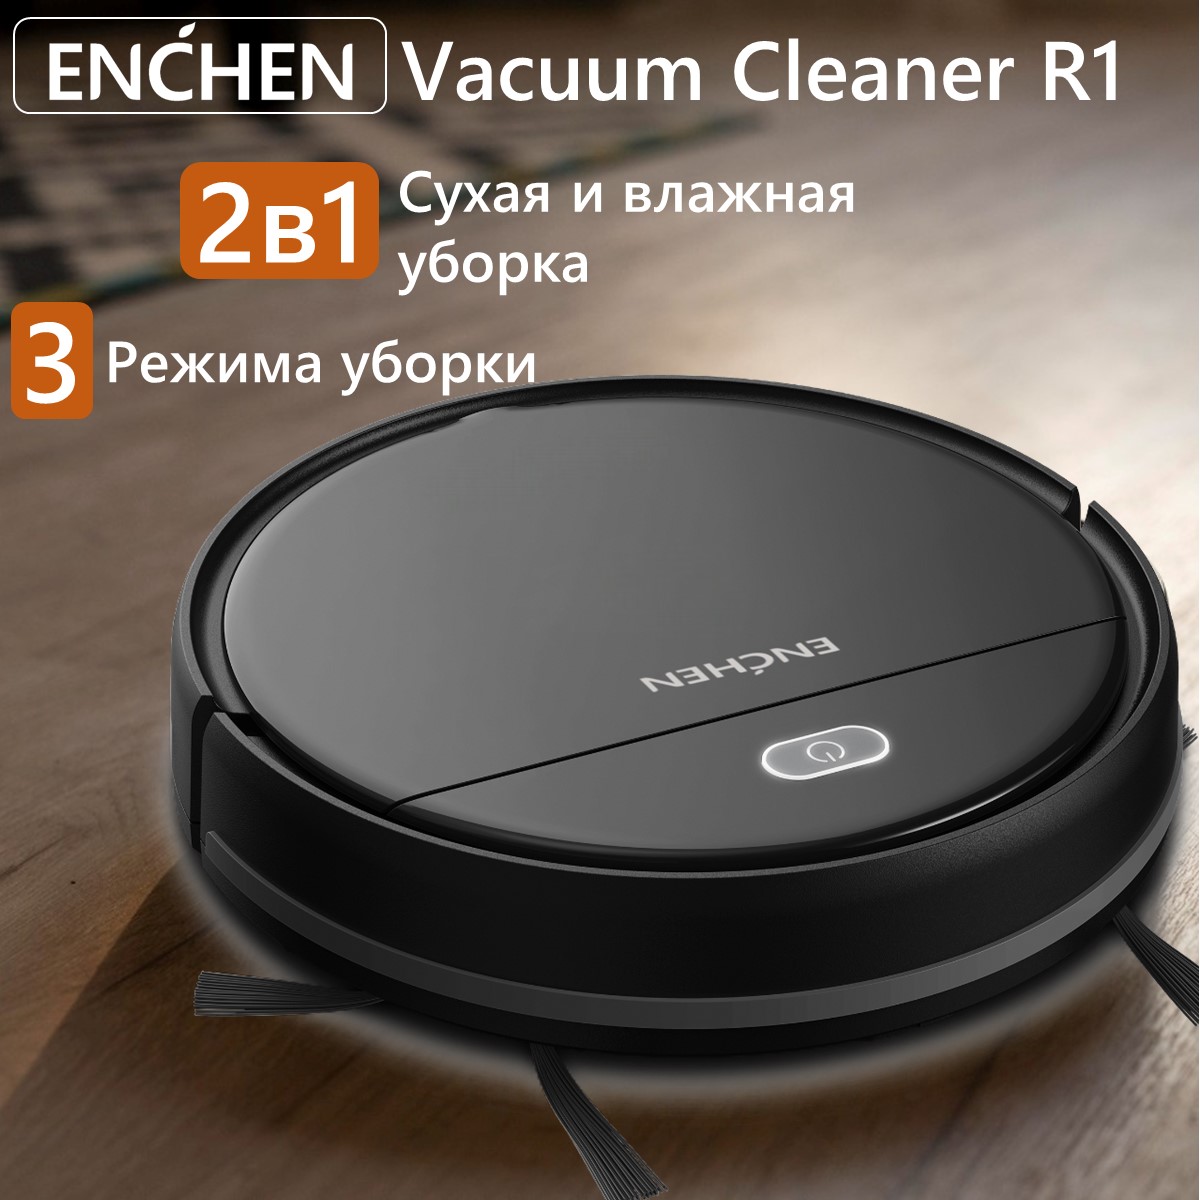 Робот-пылесос ENCHEN Vacuum Cleaner R1 черный пылесос вертикальный dreame cordless vacuum cleaner т20 pro grey vte1 gr3